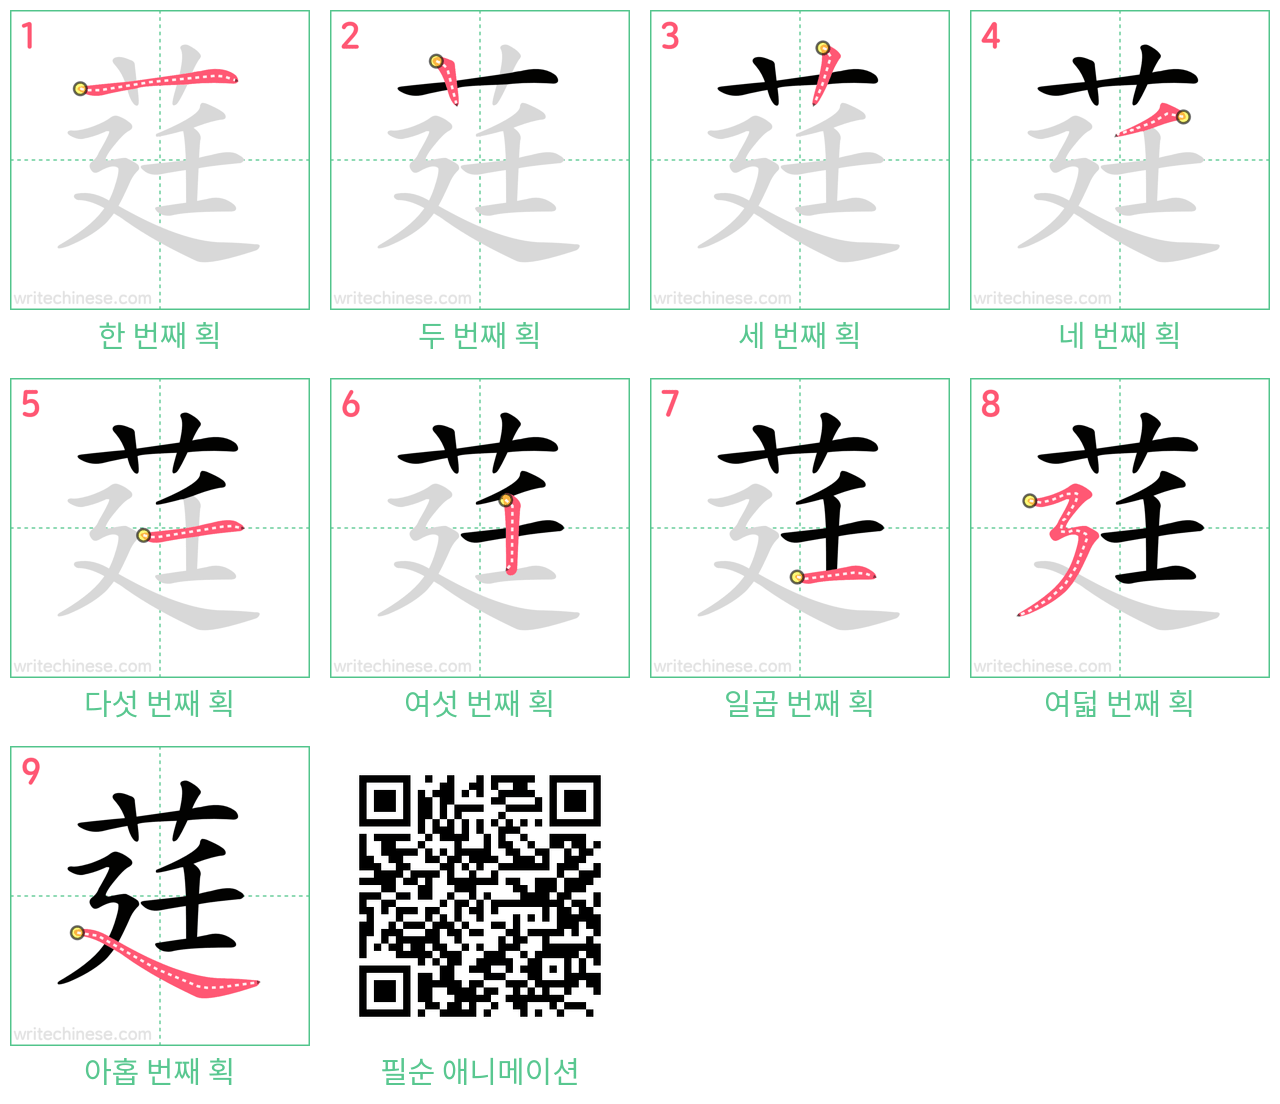 莛 step-by-step stroke order diagrams